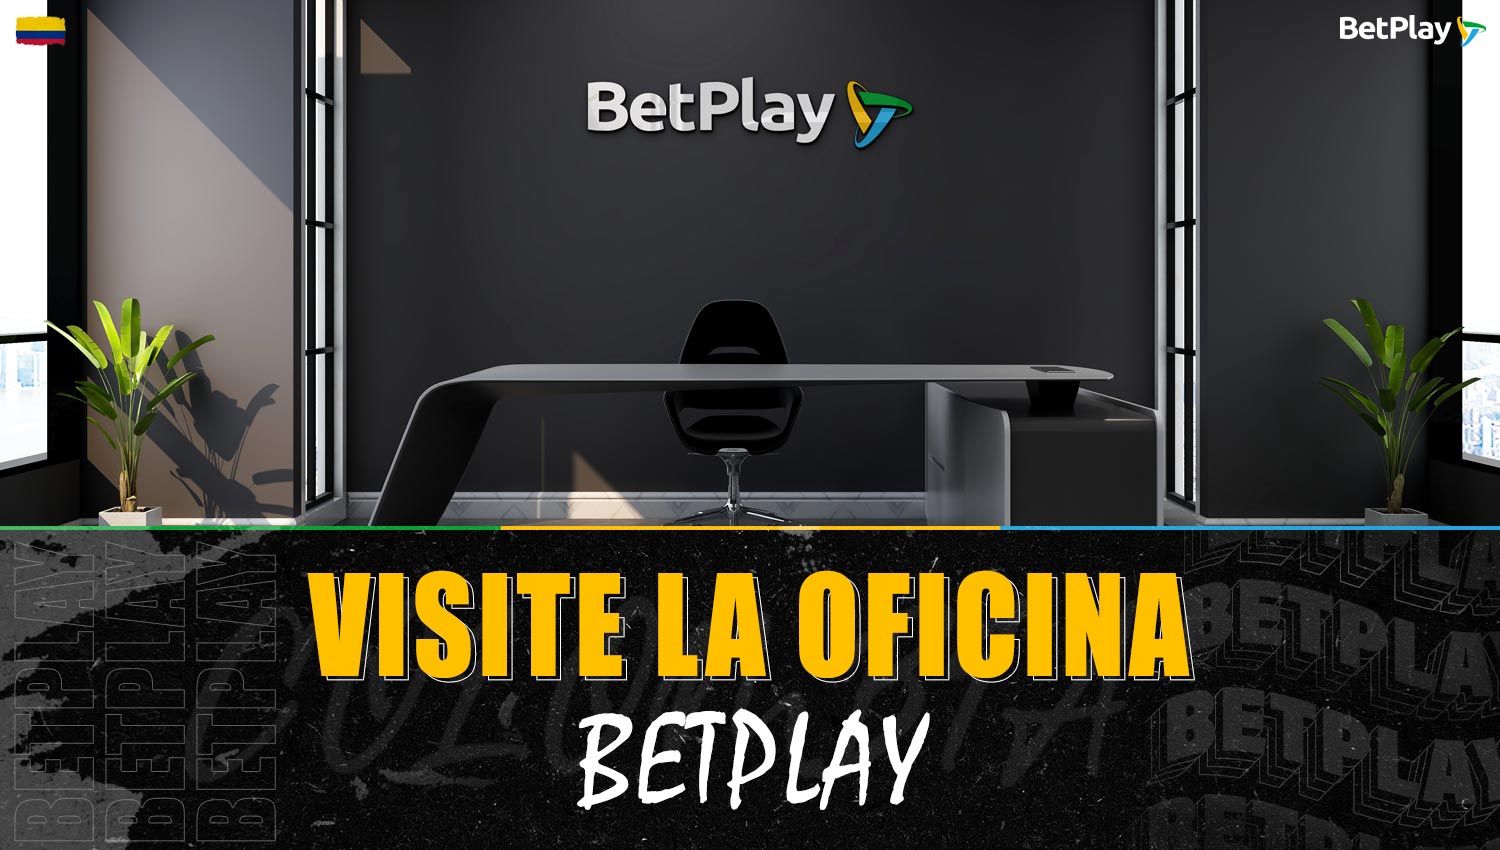 Los jugadores colombianos pueden resolver problemas junto con el servicio de soporte directamente en la oficina de Betplay